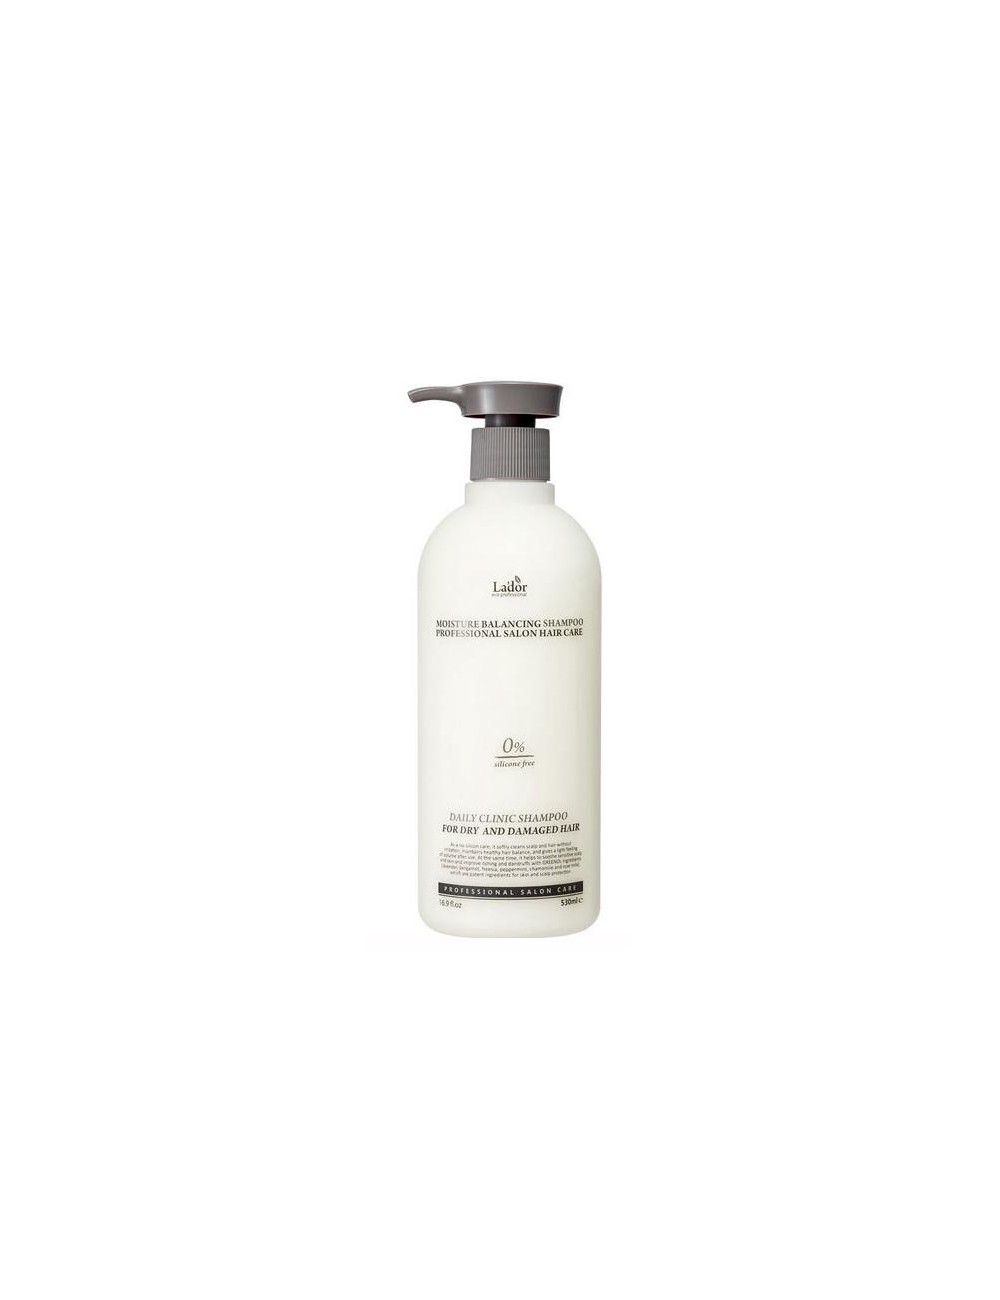 Cabello al mejor precio: La'dor Moisture Balancing Shampoo 530ml. Pelo seco y dañado de Lador Eco Professional en Skin Thinks - 